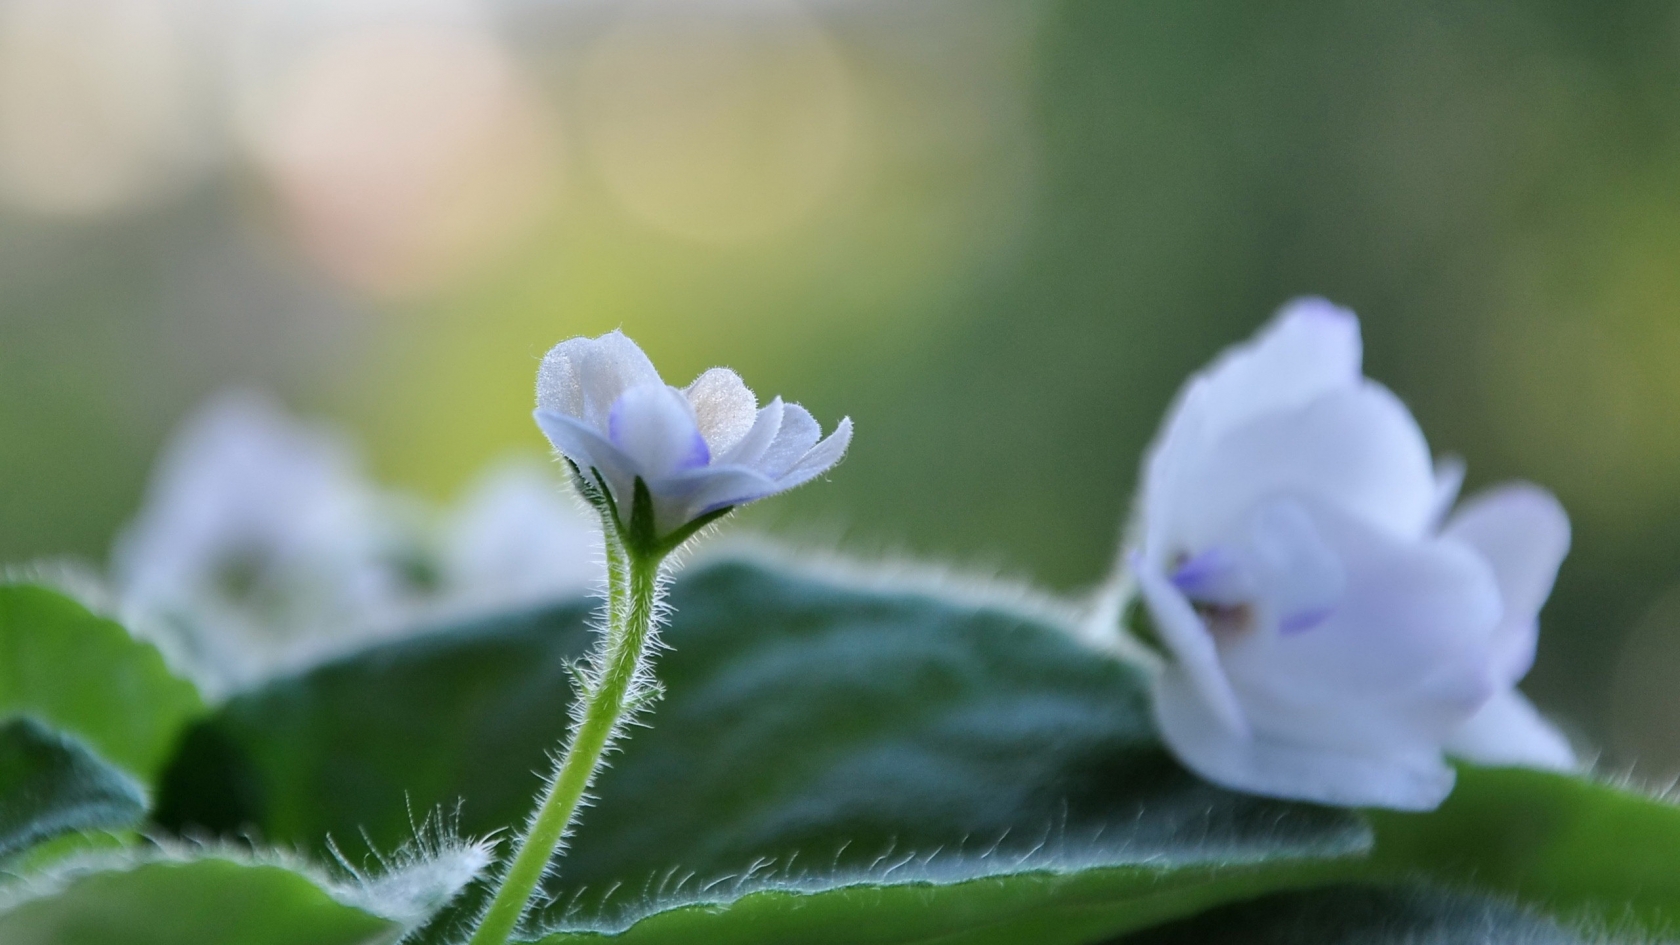 White Cute Flower for 1680 x 945 HDTV resolution